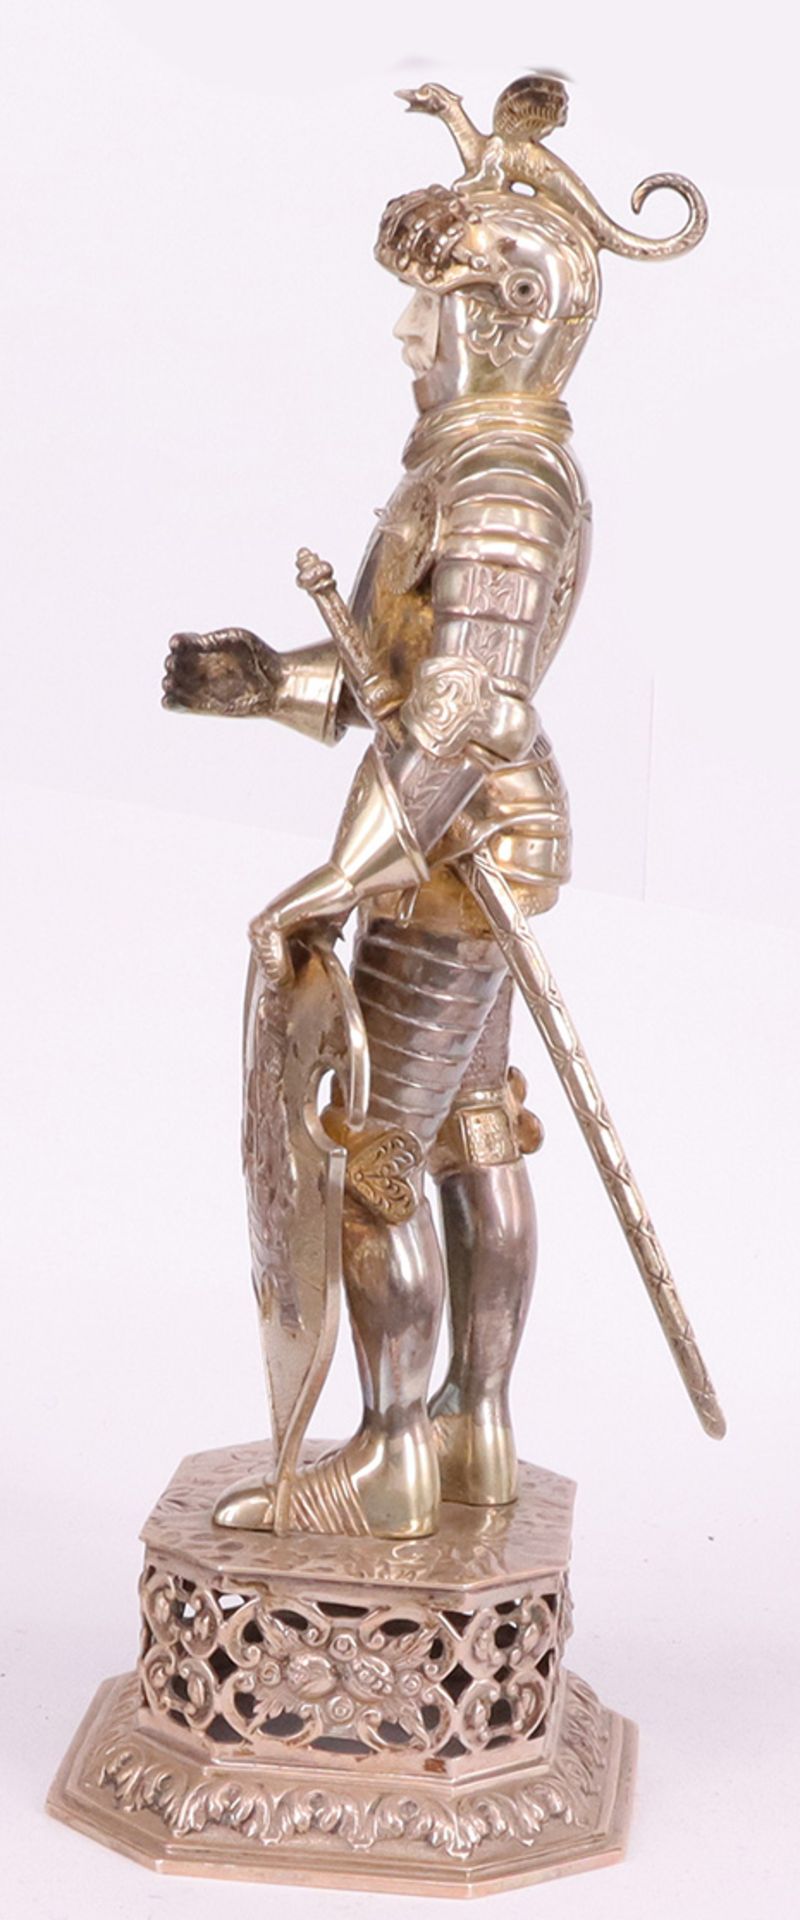 Ritterfigur in 925er Silber, vollplastische Darstellung, historisierende fein ausgeführte Arbeit. - Bild 5 aus 6